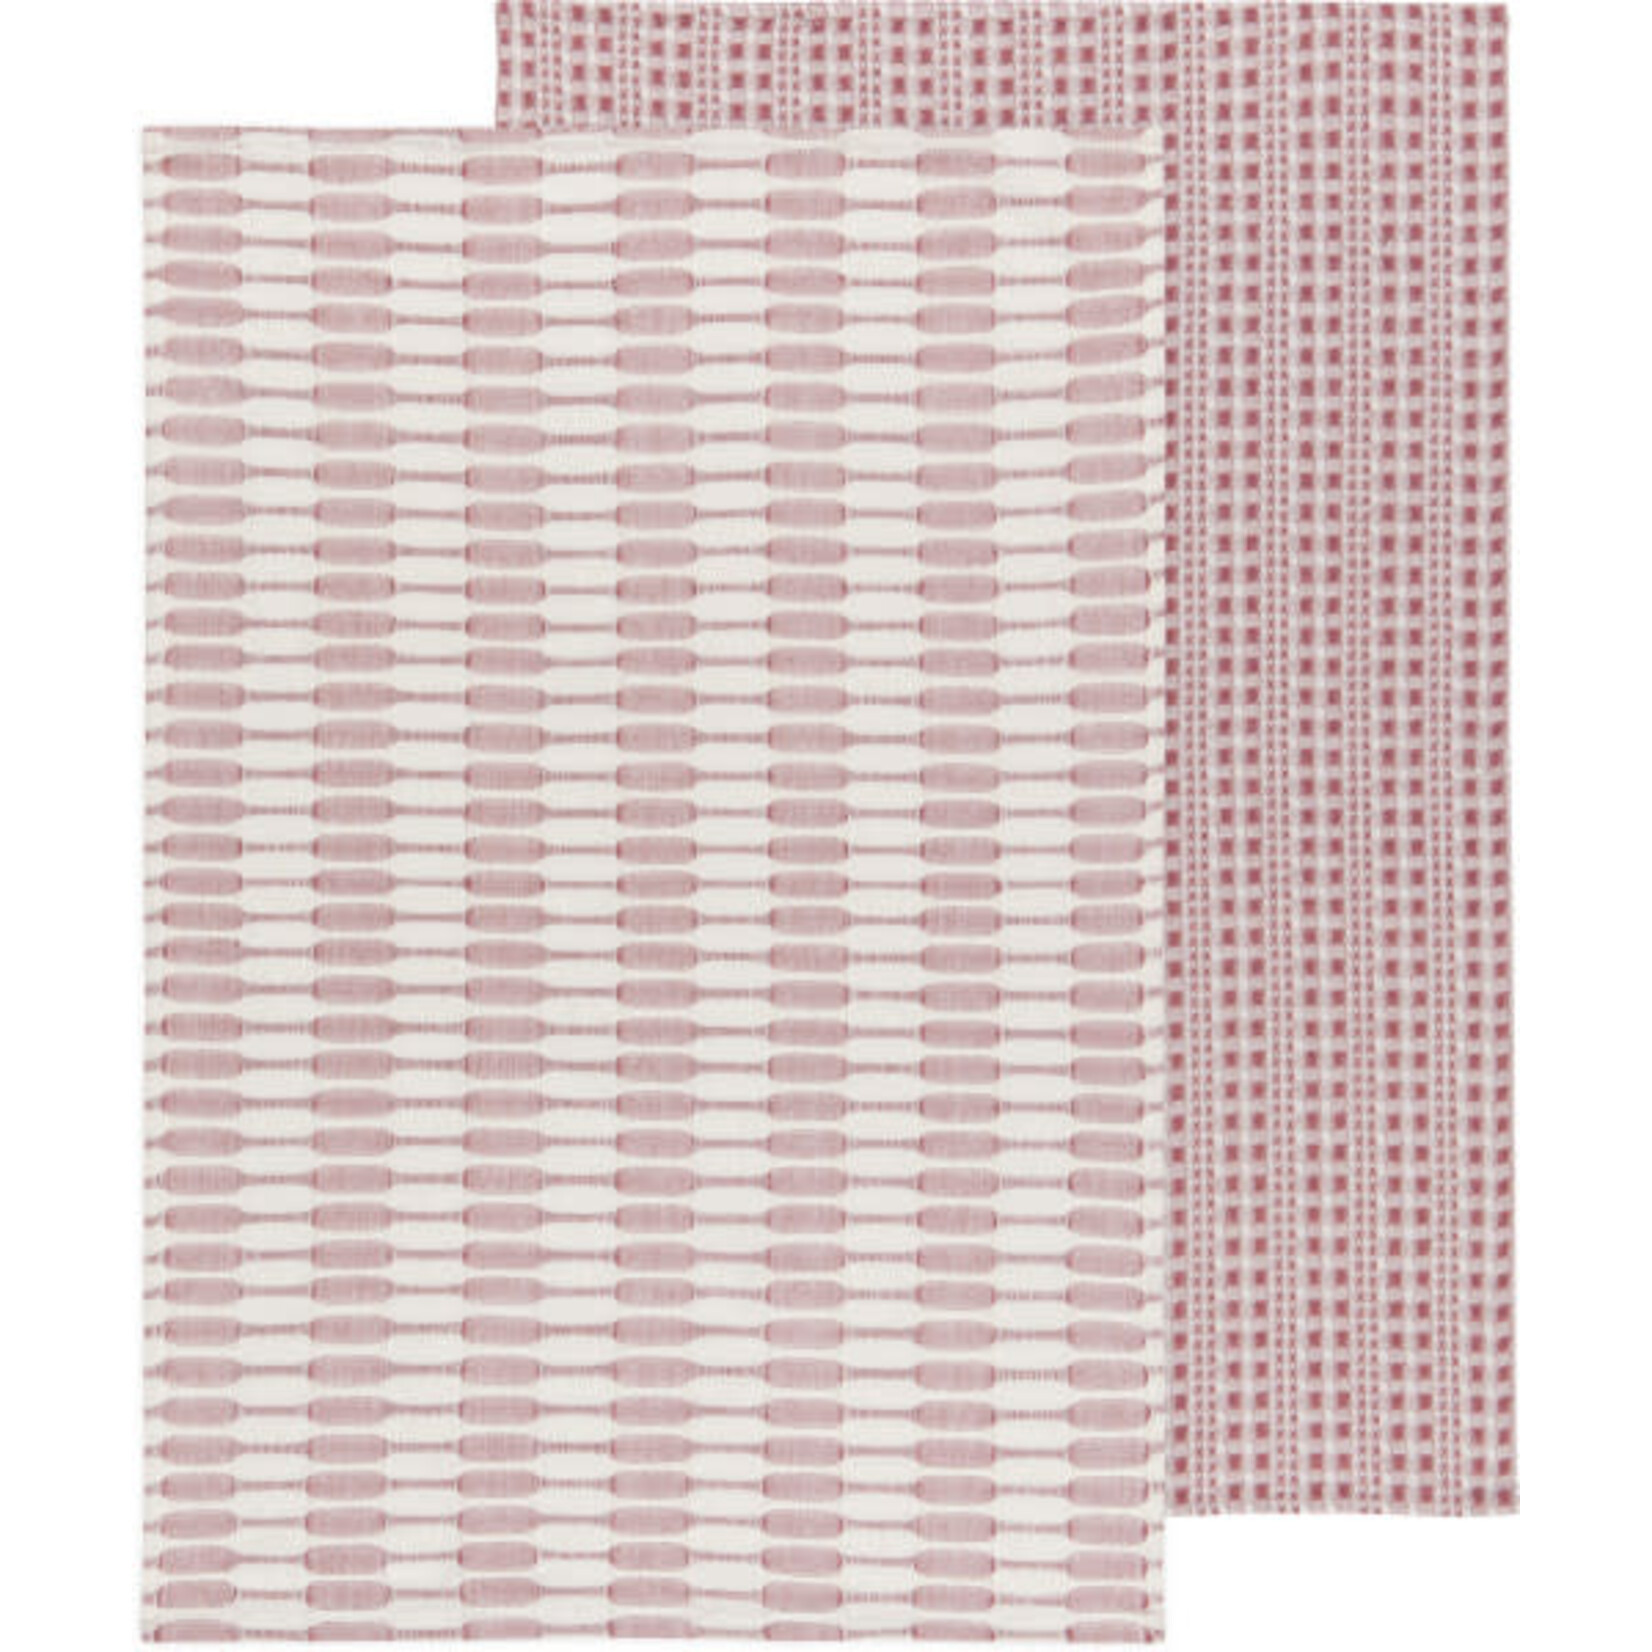 Danica Studios Abode Canyon Rose Tea Towel - Set of 2